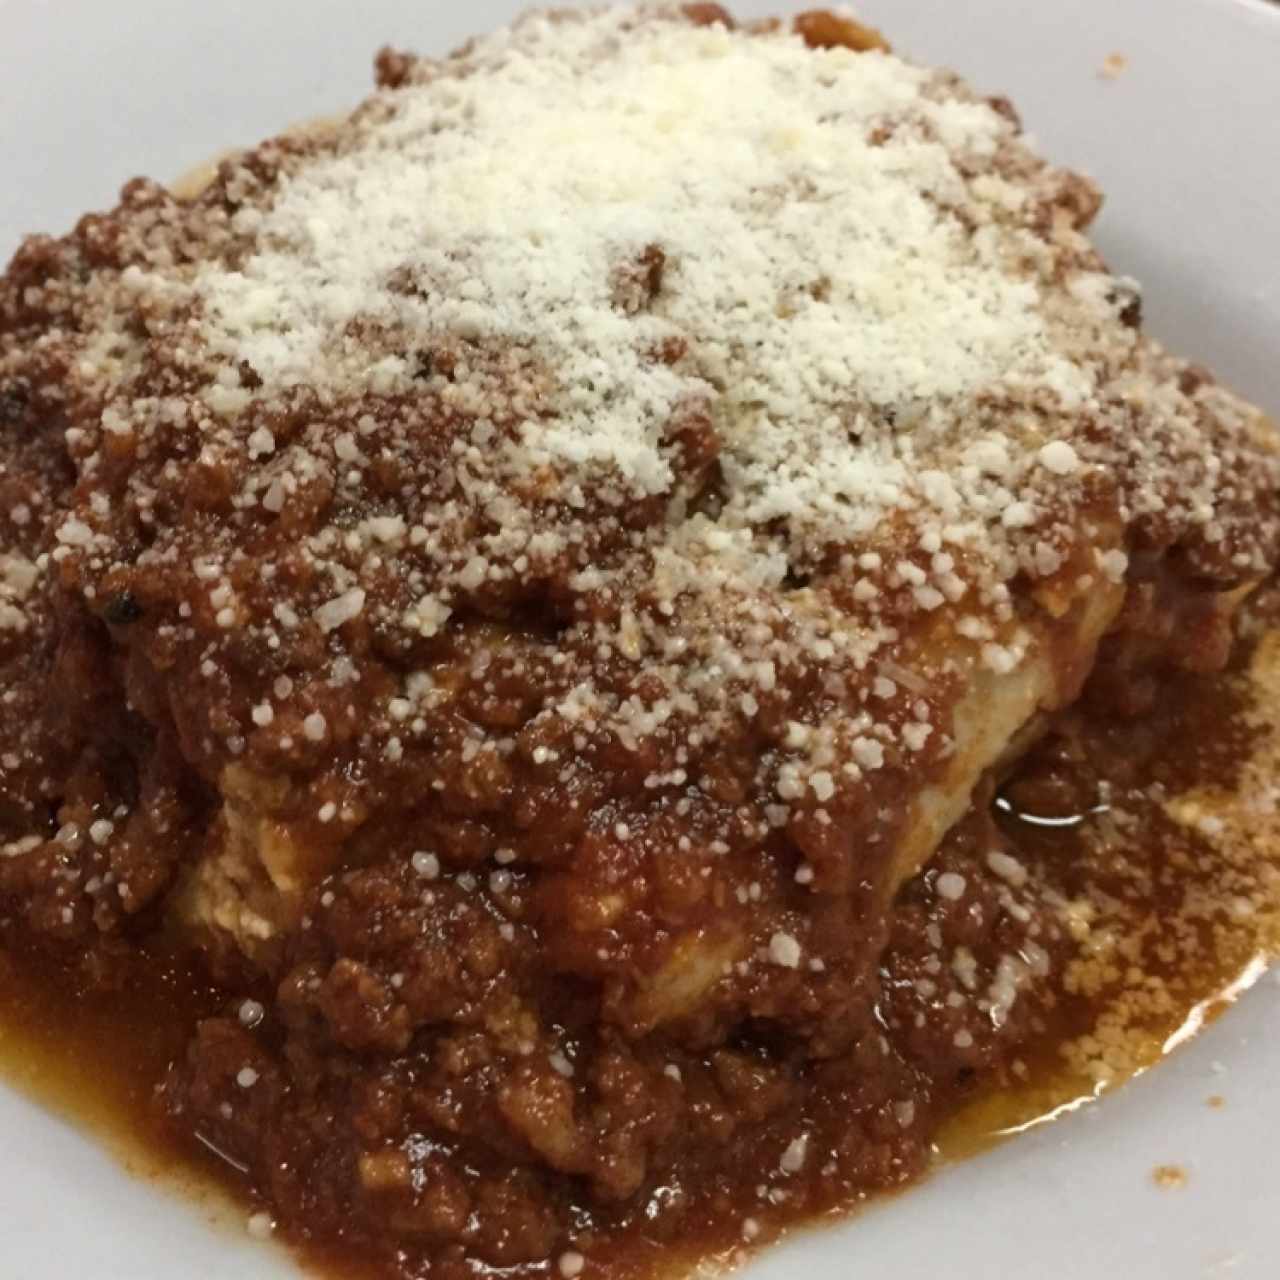 Lasagna Boloñesa